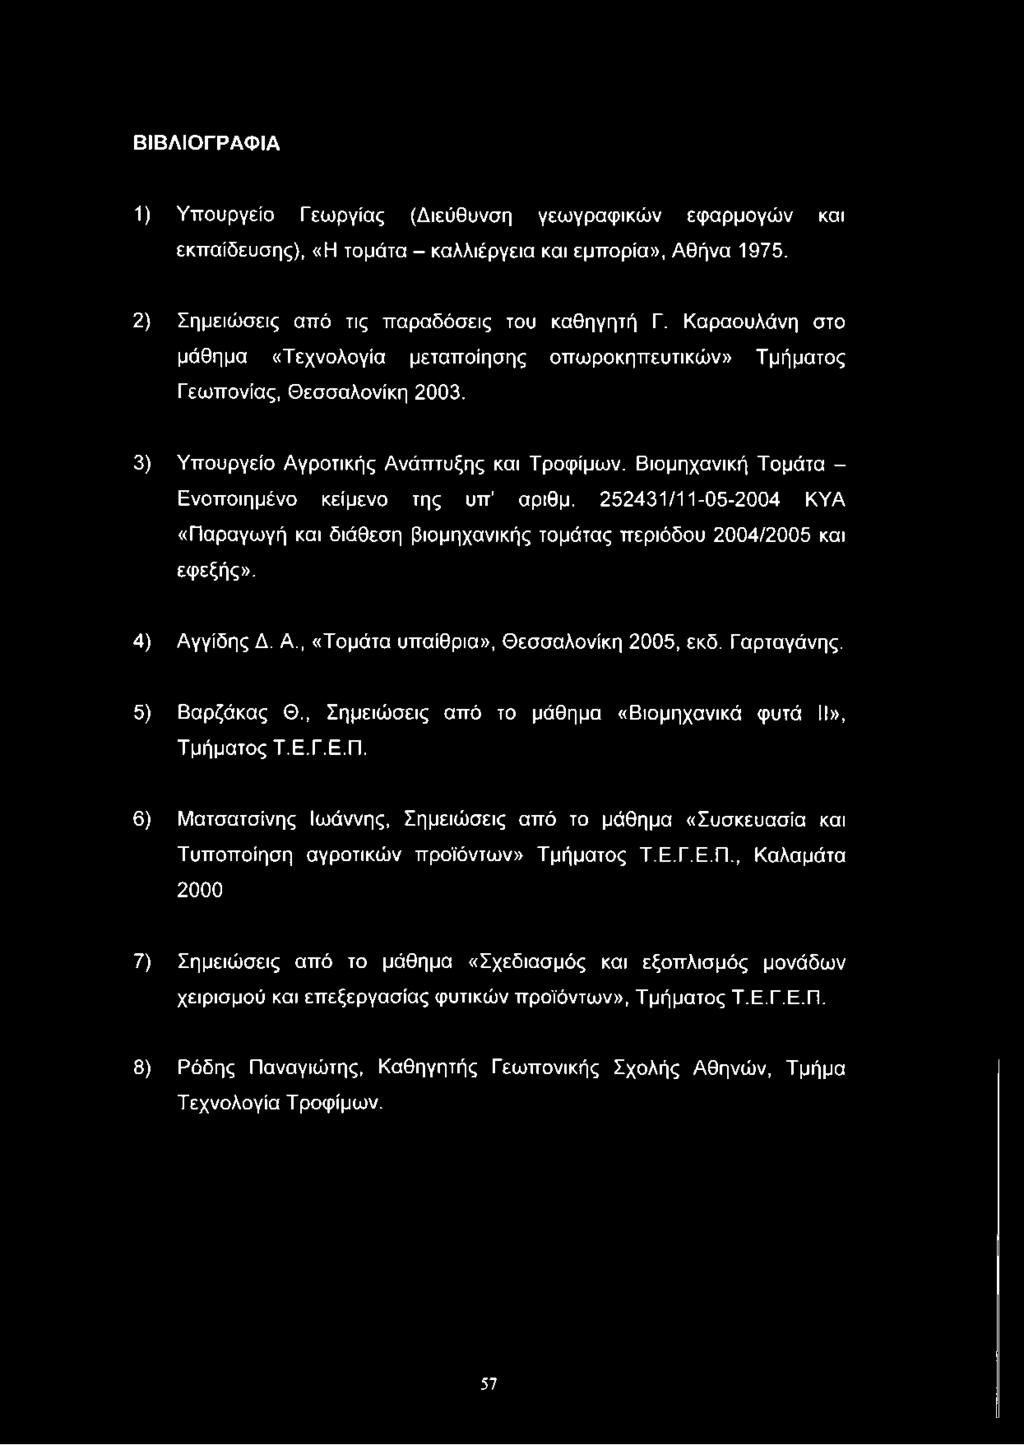 Βιομηχανική Τομάτα - Ενοποιημένο κείμενο της υπ αριθμ. 252431/11-05-2004 ΚΥΑ «Παραγωγή και διάθεση βιομηχανικής τομάτας περιόδου 2004/2005 και εφεξής». 4) Αγγίδης Δ. Α., «Τομάτα υπαίθρια», Θεσσαλονίκη 2005, εκδ.